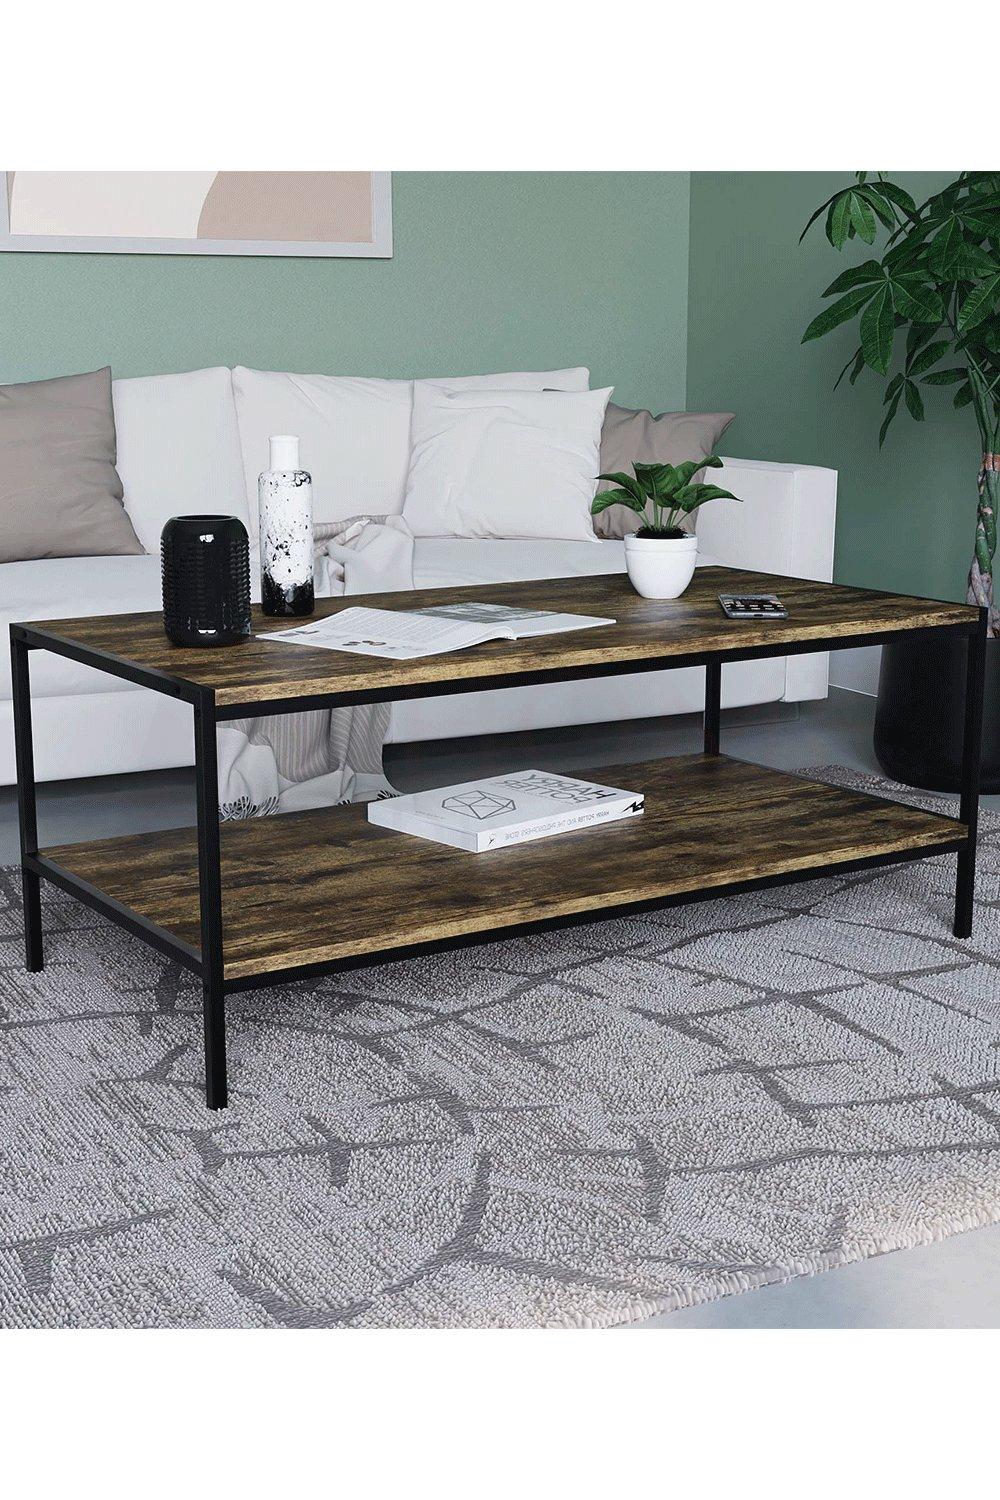 Vida Designs Brooklyn Coffee Table Storage Living Room 400 x 1000 x 500 mm